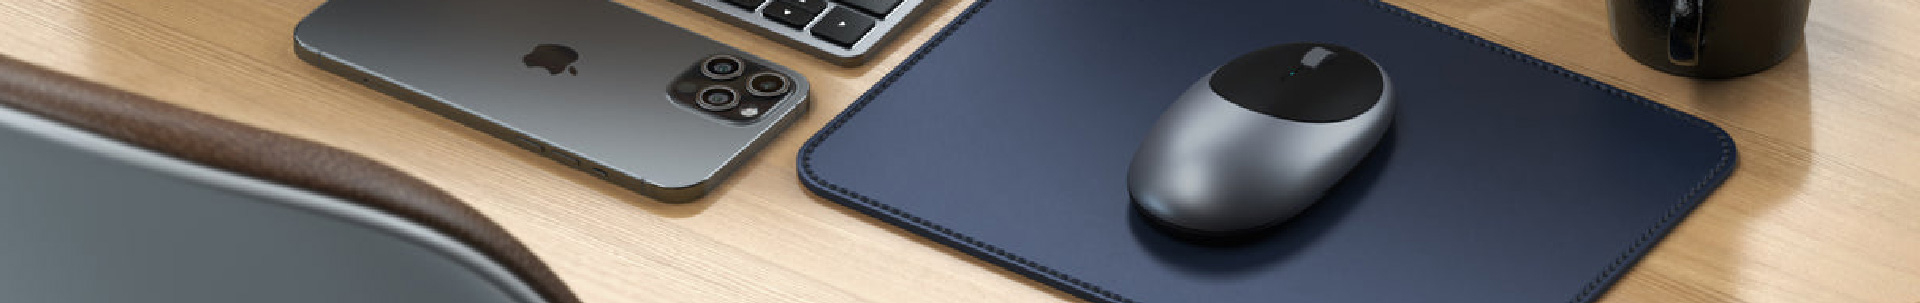 Souris Bluetooth Macbook et iMac Rechargeable USB C, Satechi M1 - Rose Gold  - Français